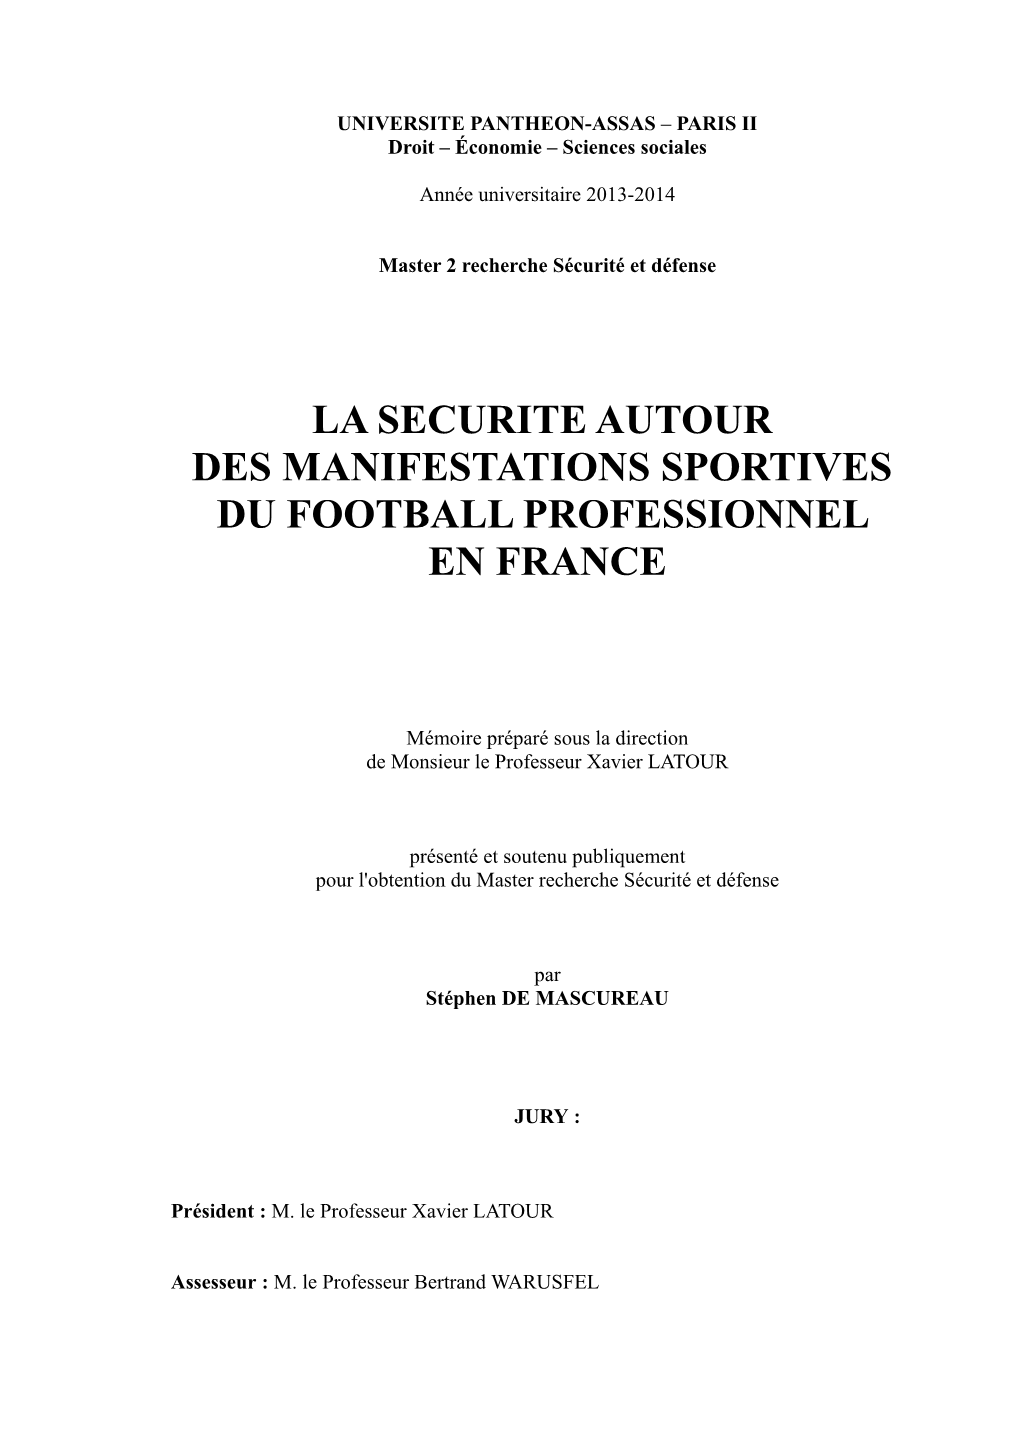 La Securite Autour Des Manifestations Sportives Du Football Professionnel En France